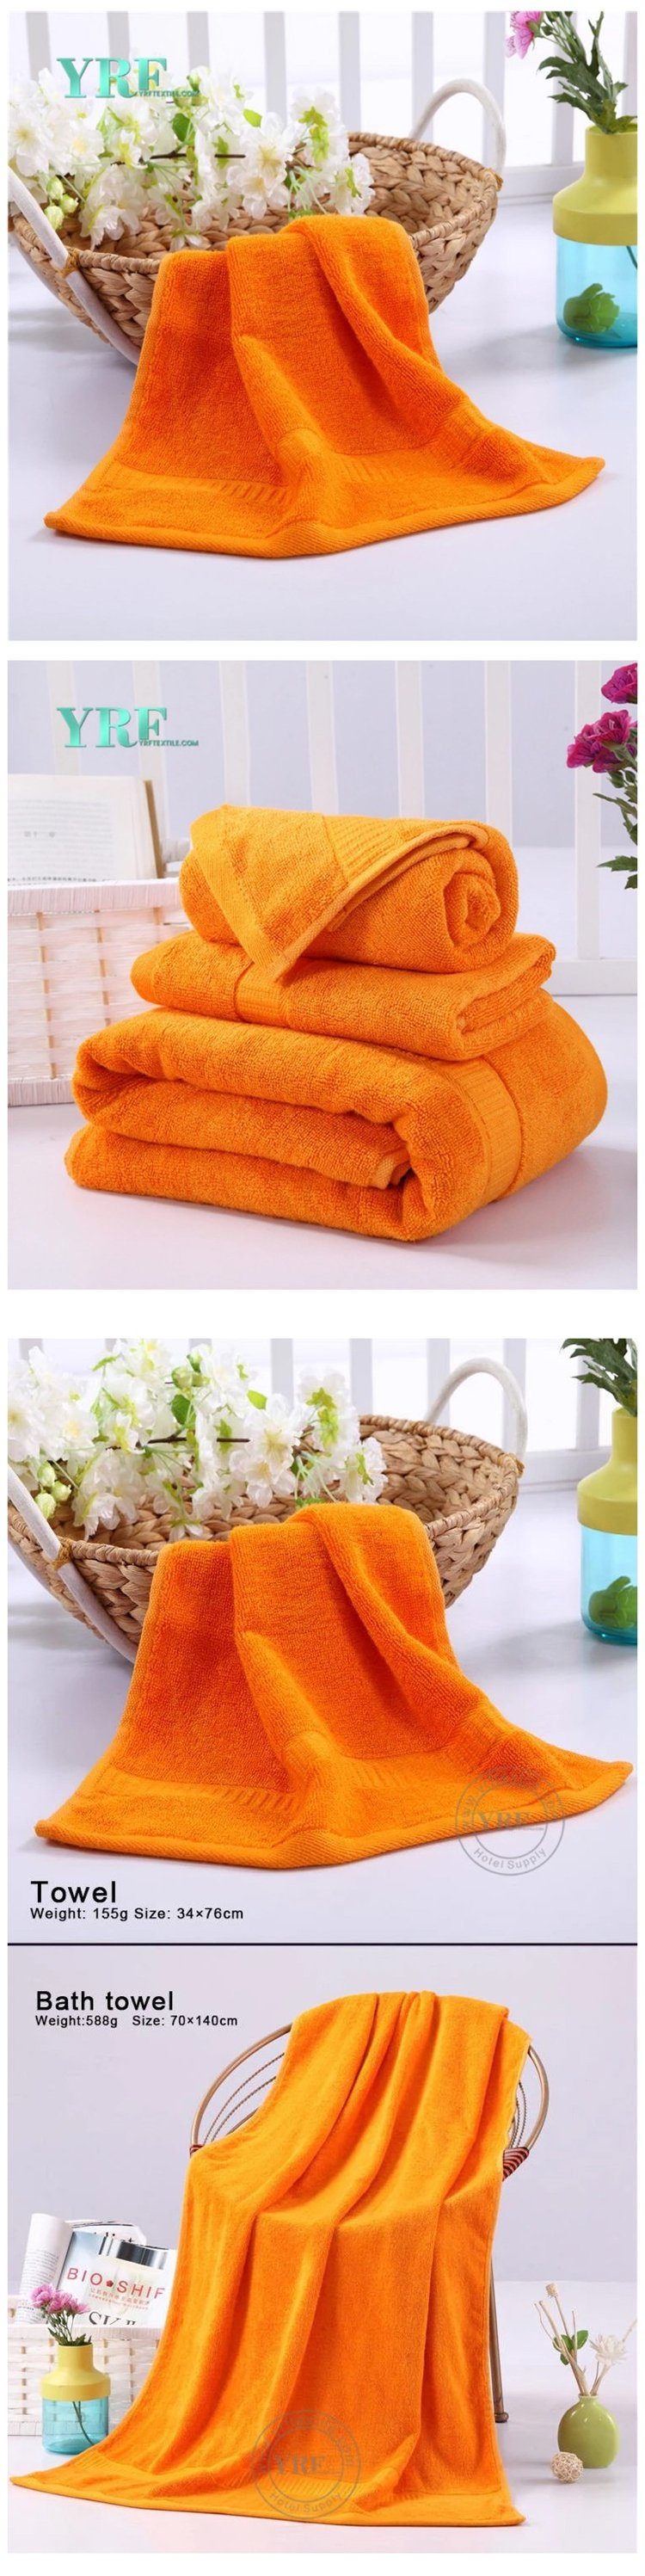 Home Using Various Color Plain Dyed Cotton Bath Towels